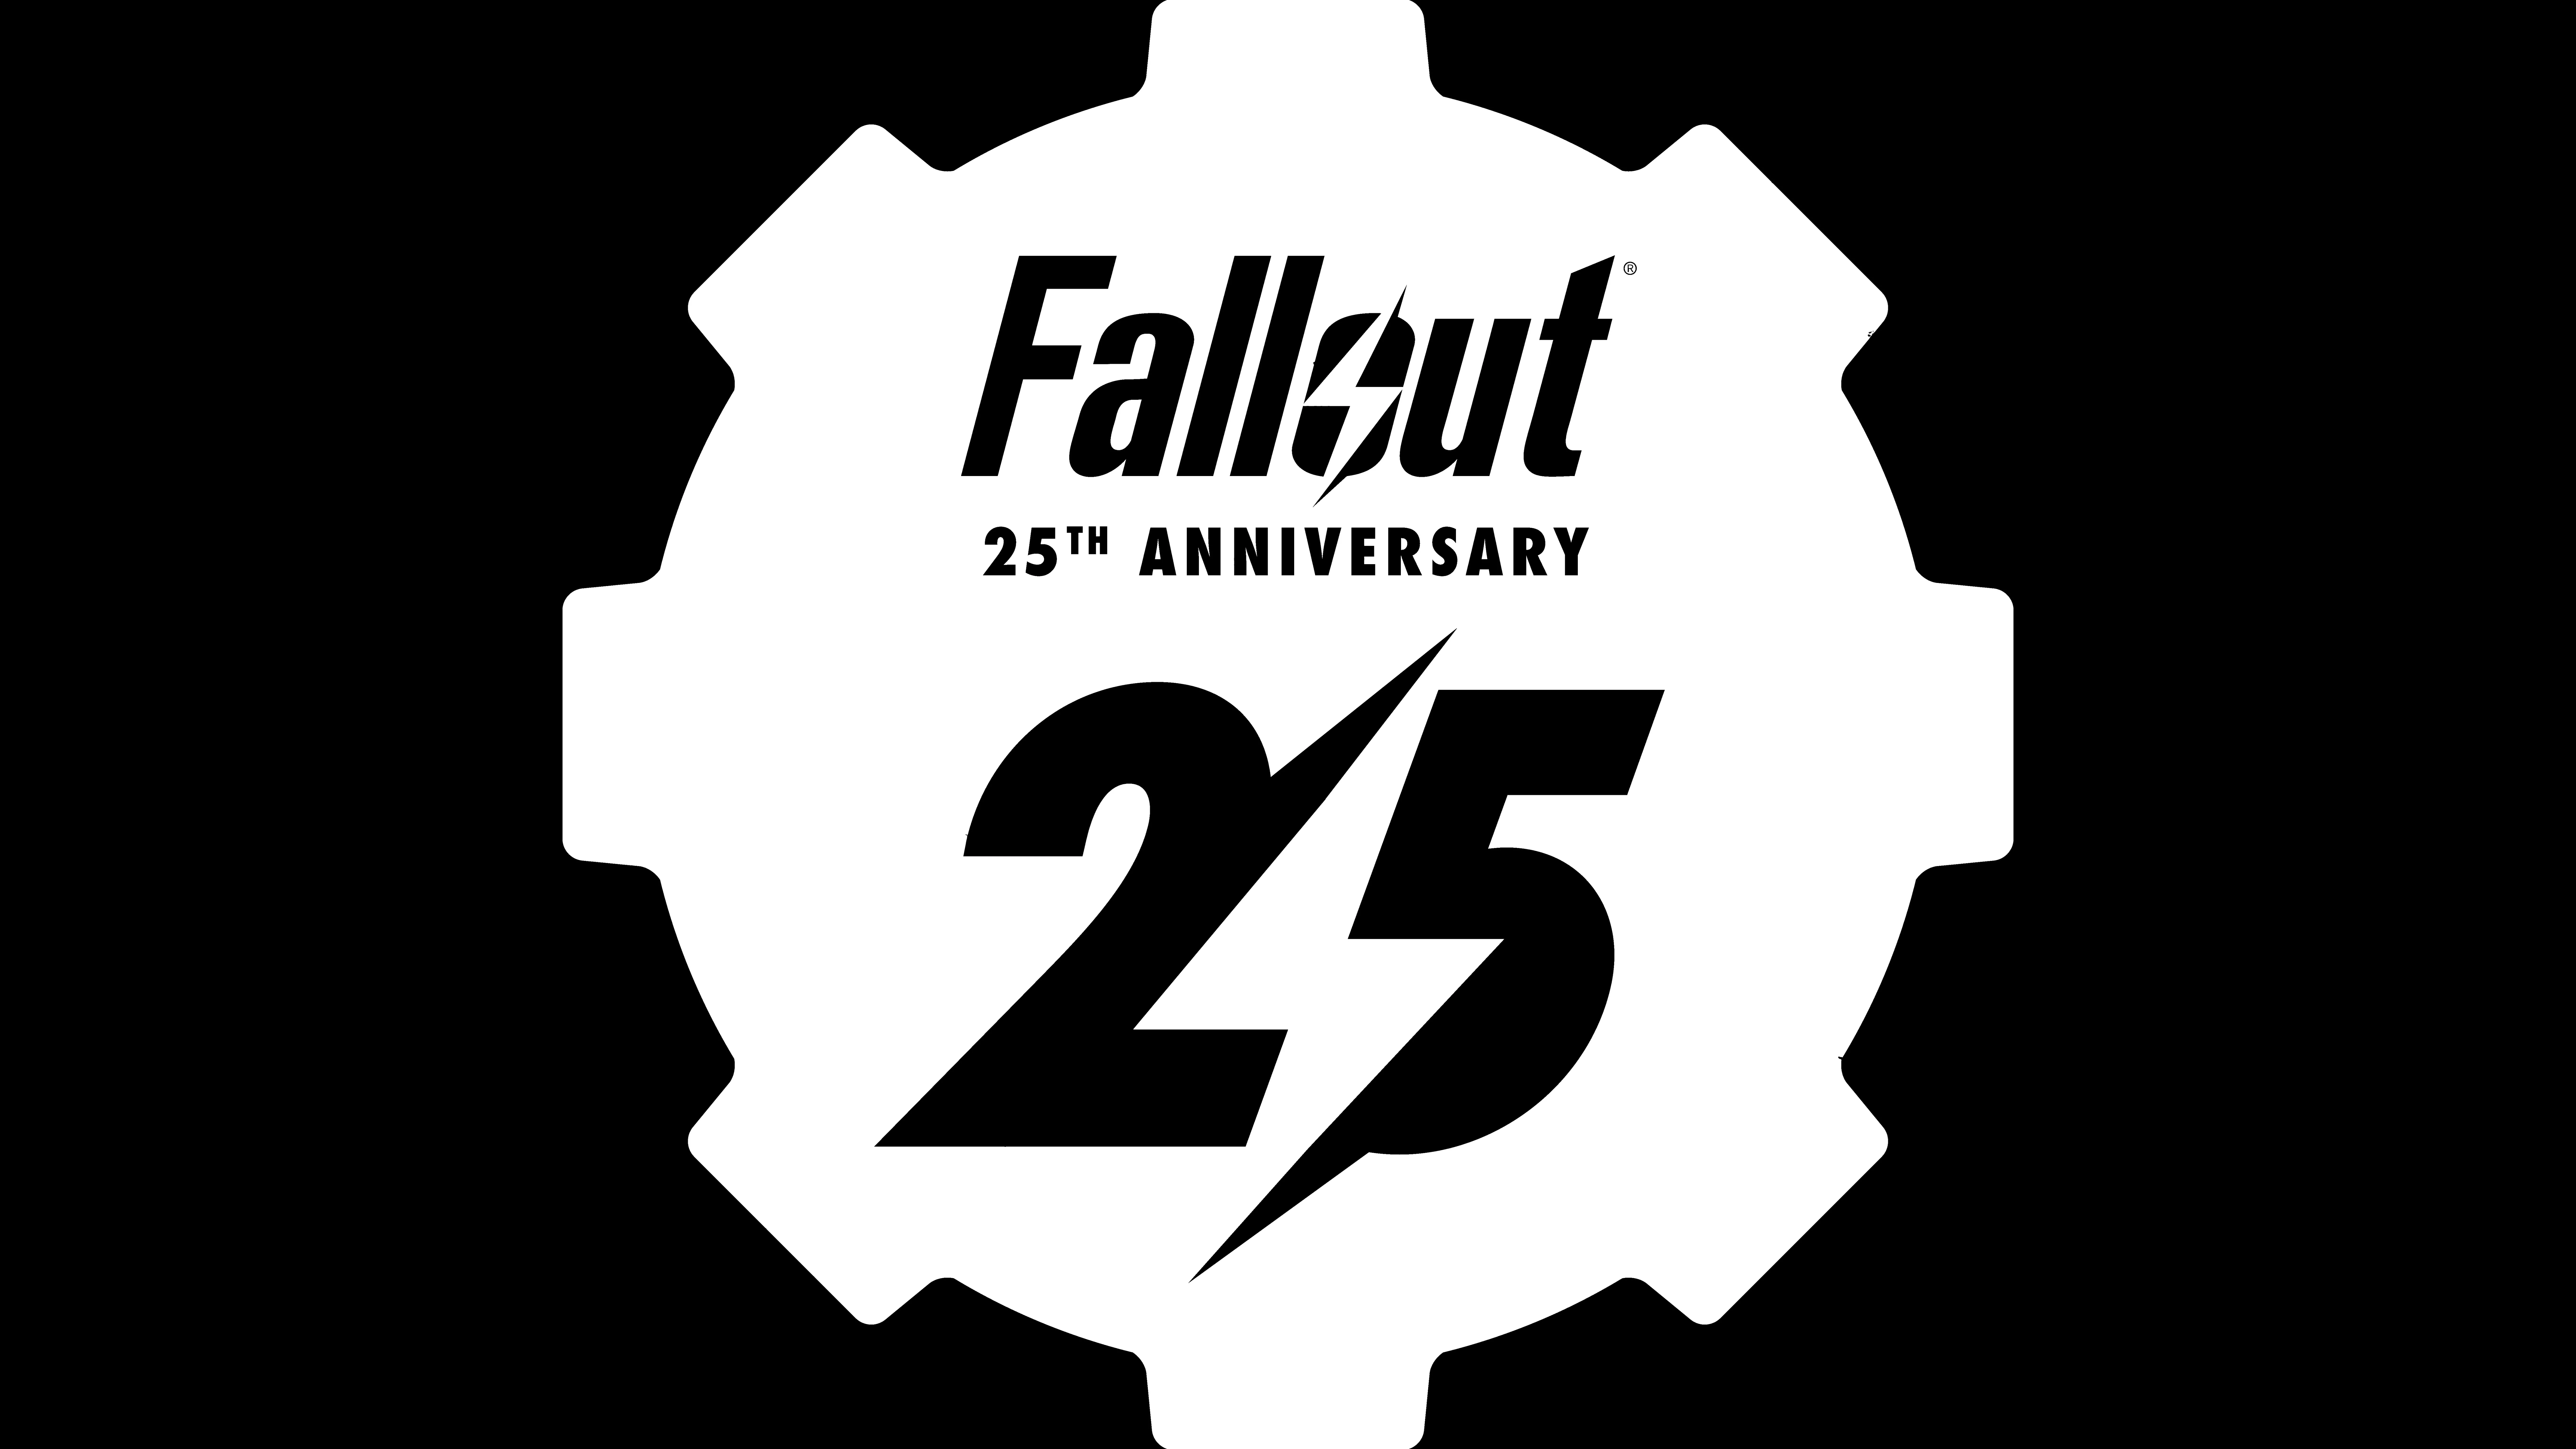 Fallout: Bethesda feiern der 25. Geburtstag mit einer Retrospektive Heropic